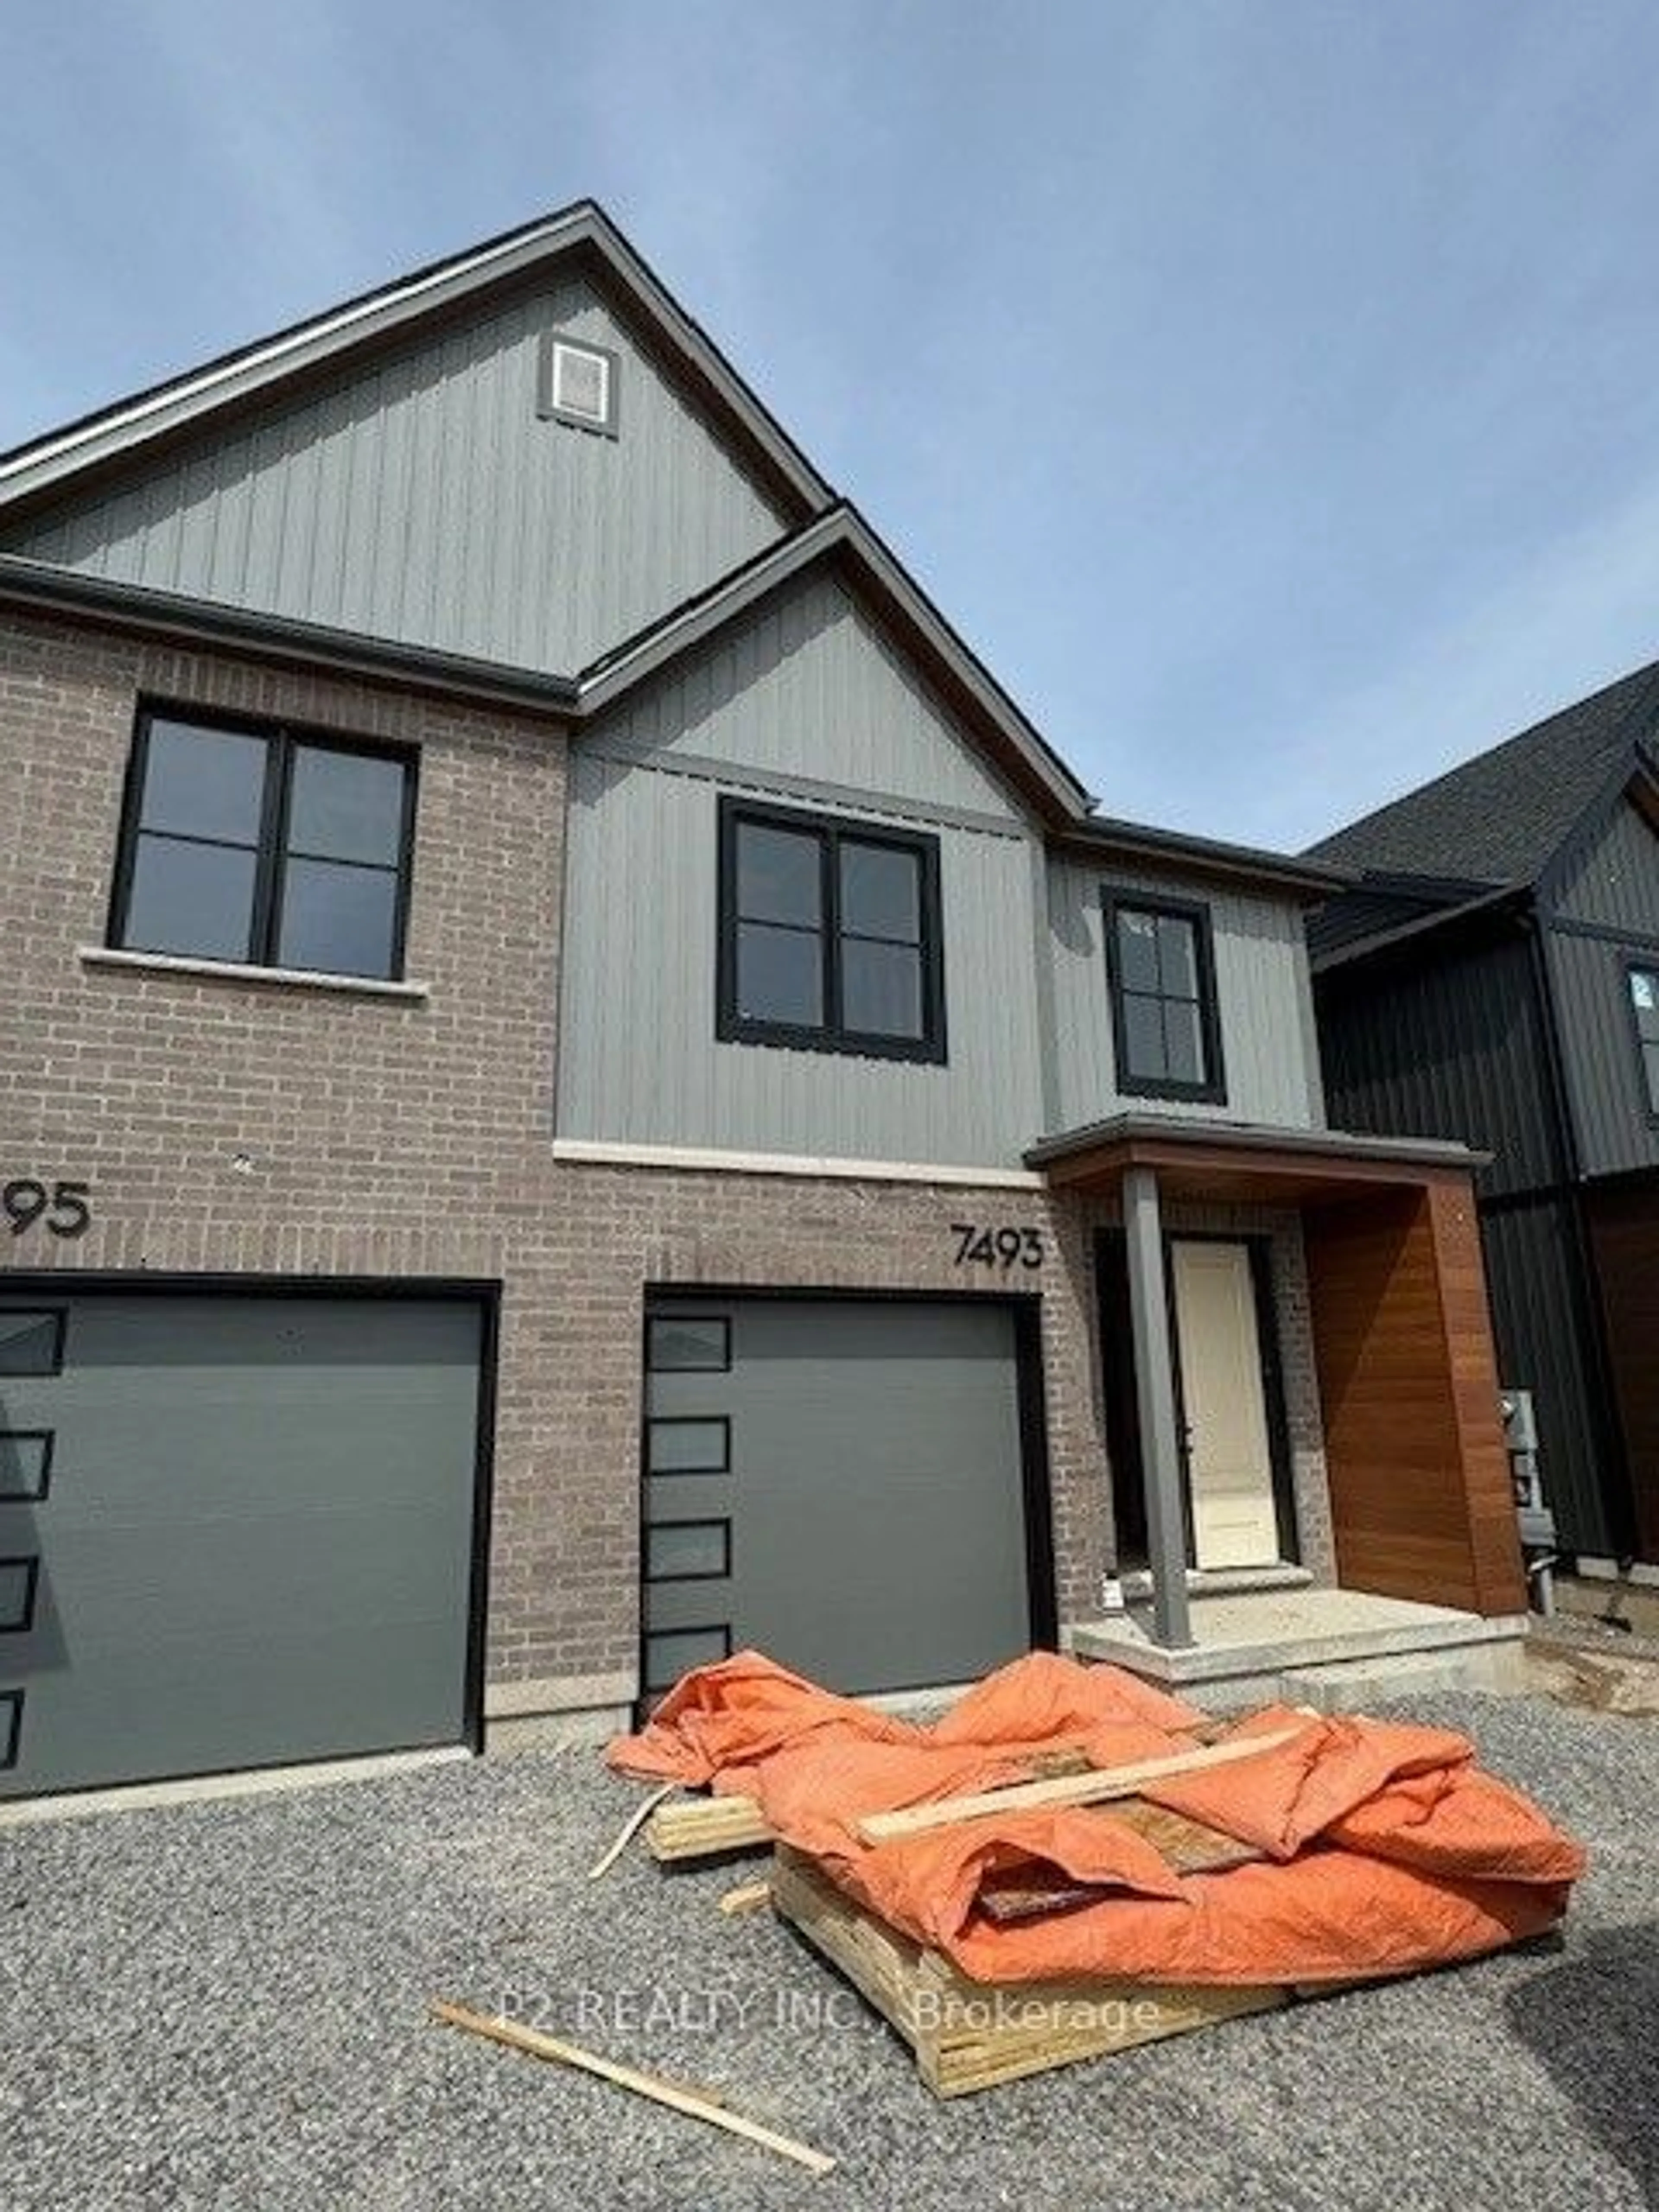 Home with brick exterior material for 7493 Splendour Dr, Niagara Falls Ontario L2H 3V8